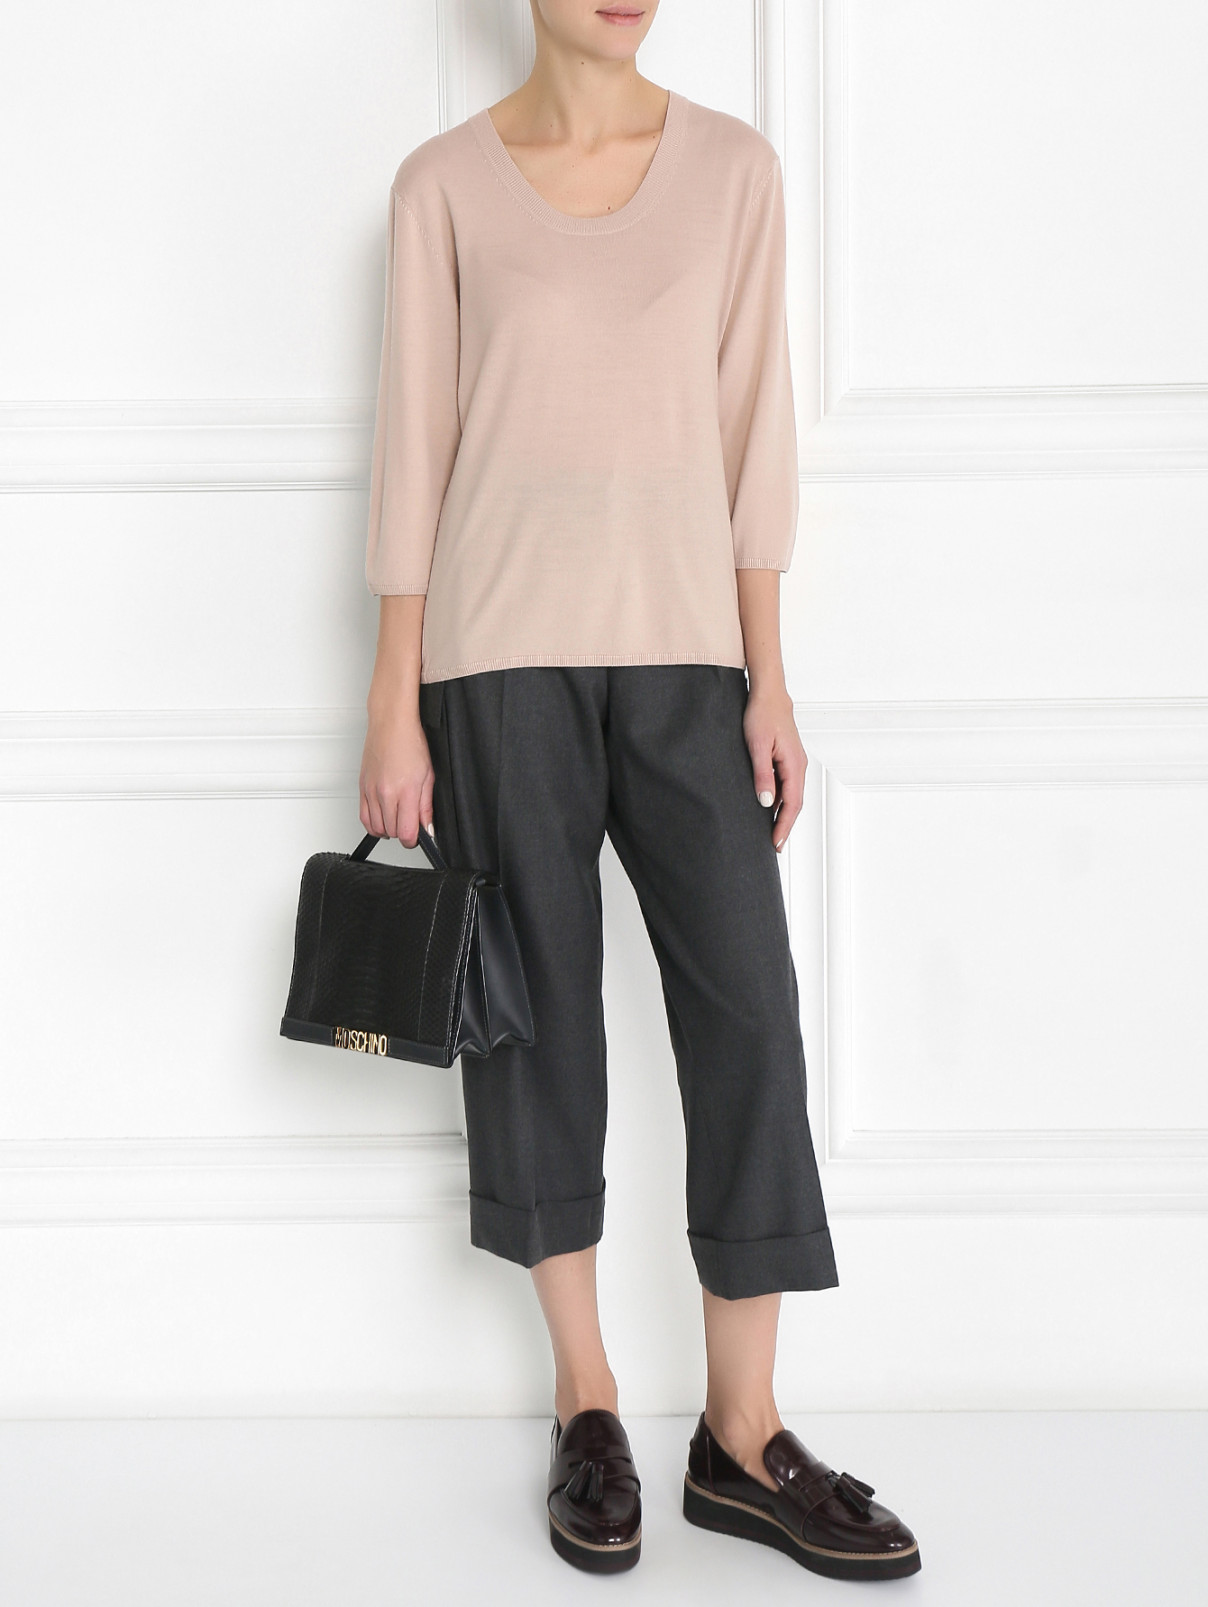 Укороченные брюки из шерсти с накладными карманами Barbara Bui  –  Модель Общий вид  – Цвет:  Серый